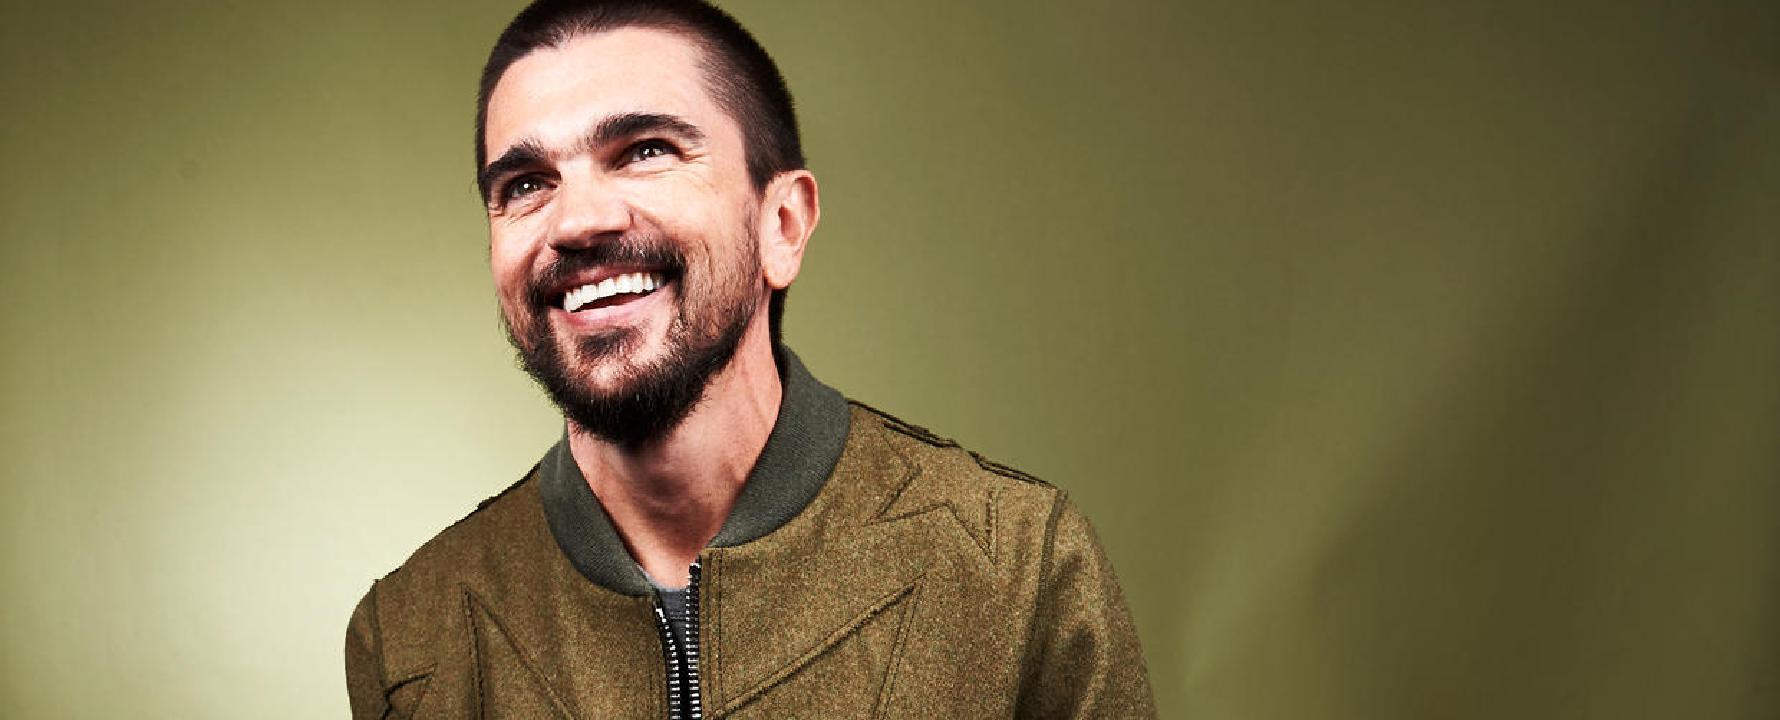 Fotografía promocional de Juanes